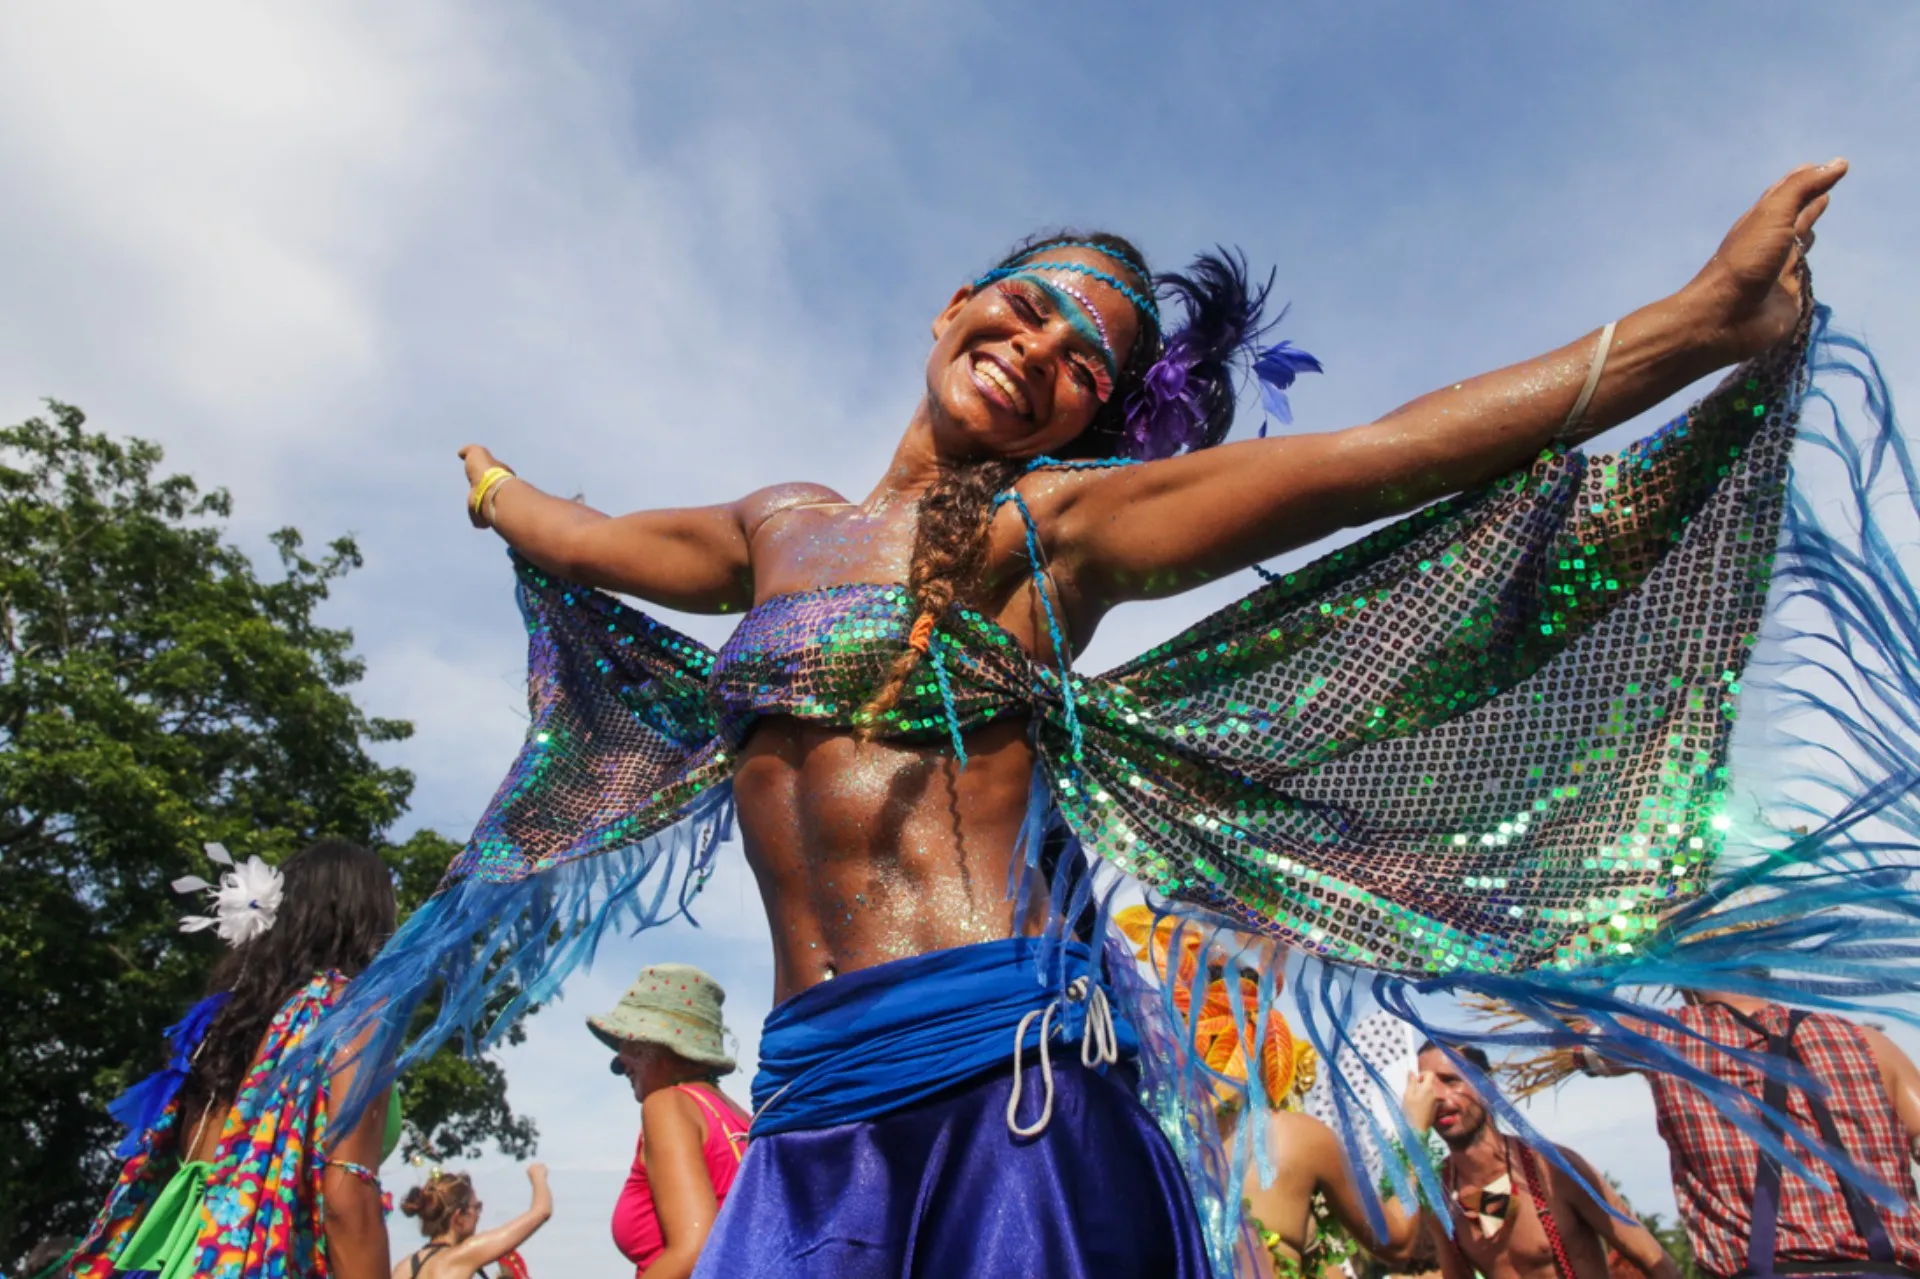 Carnaval de rua com centenas de blocos espalhados pelas cidades